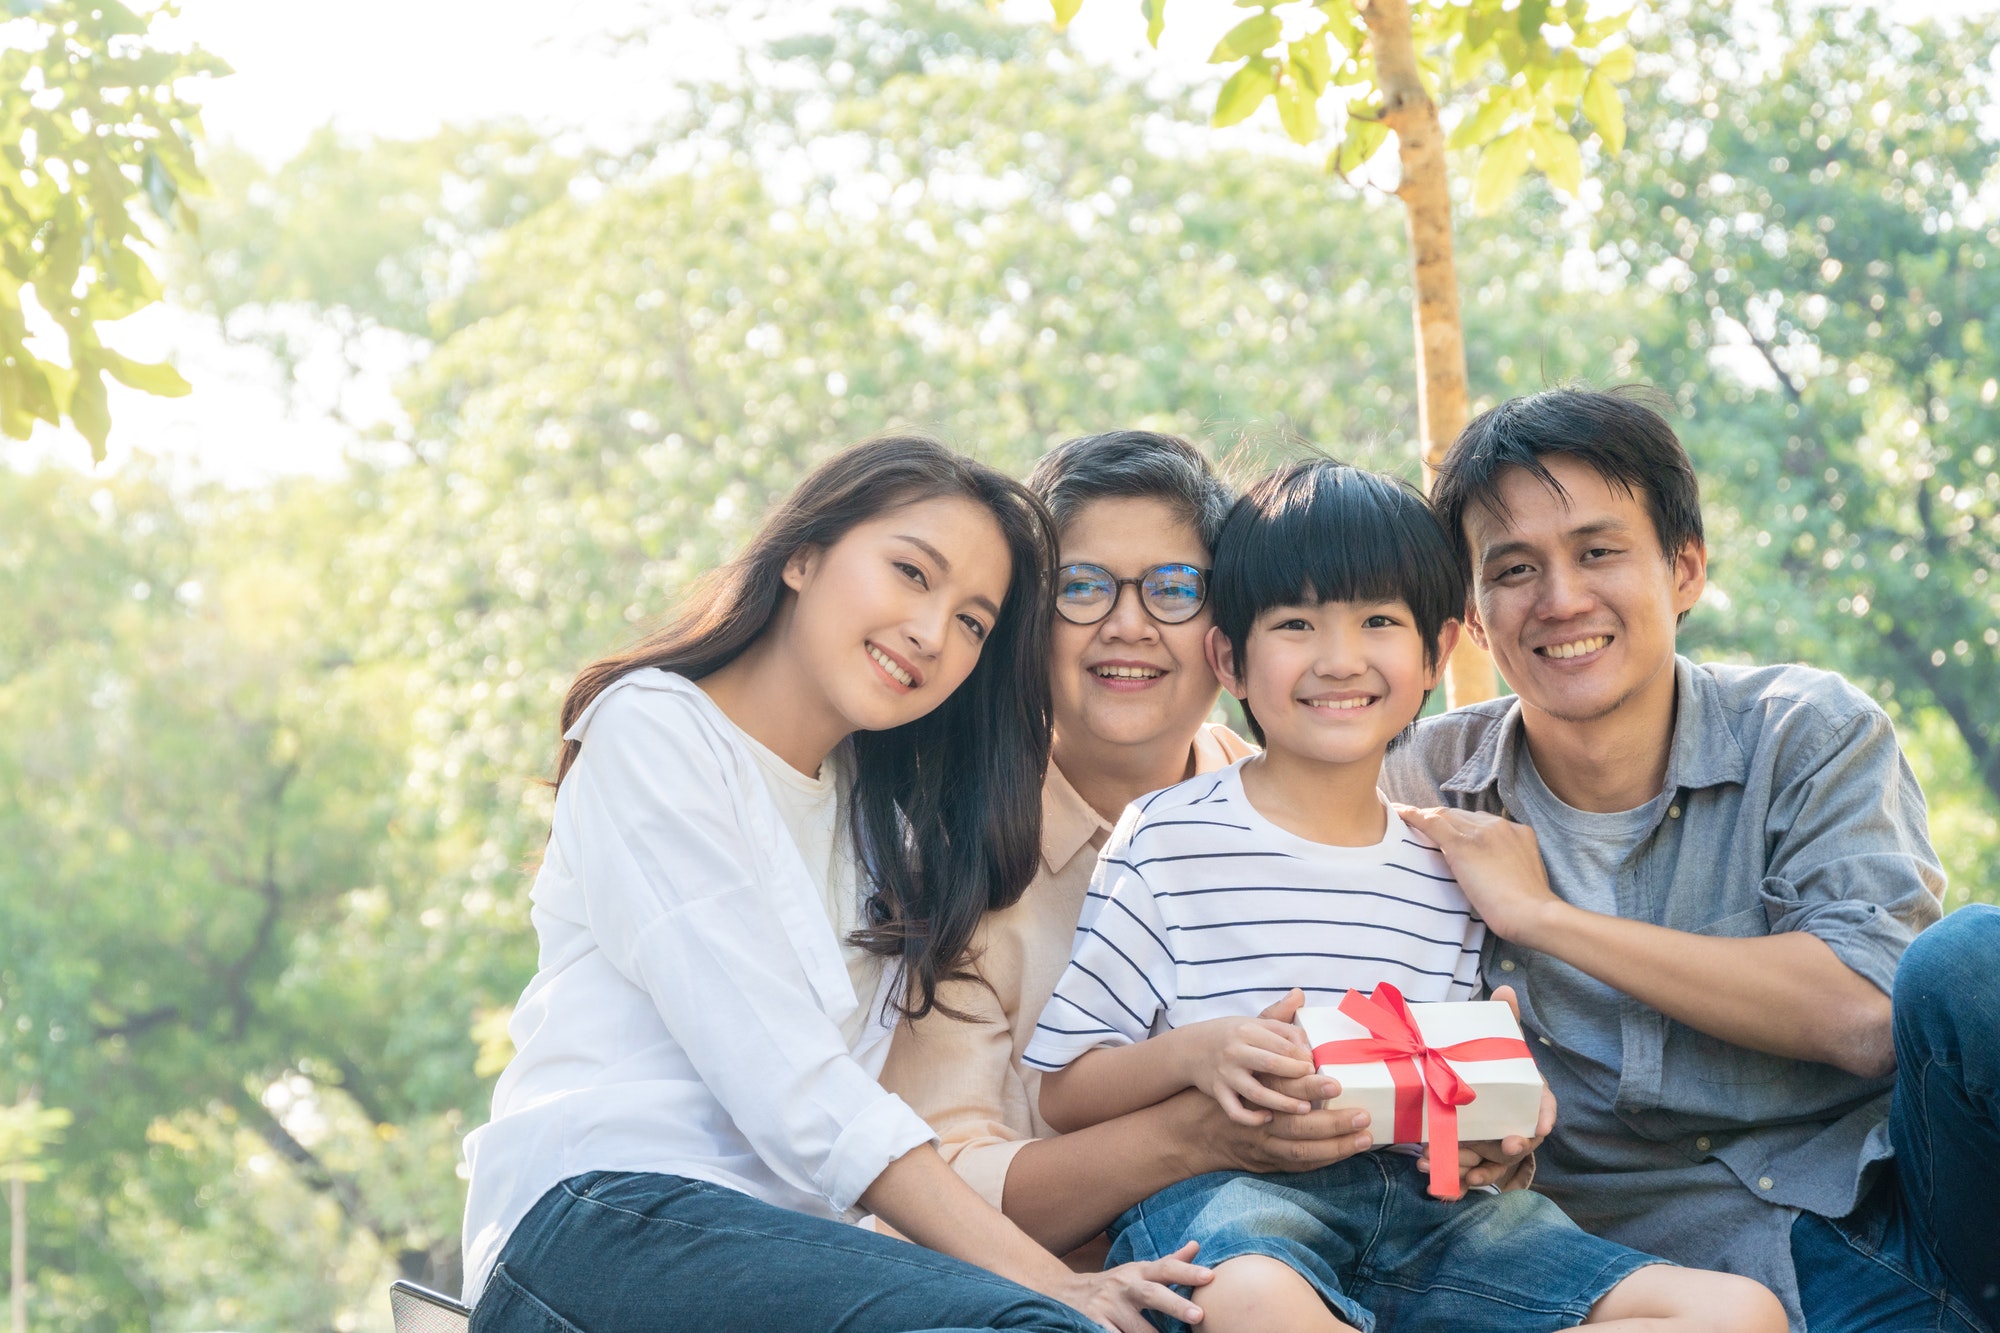 Asian family portrait at park